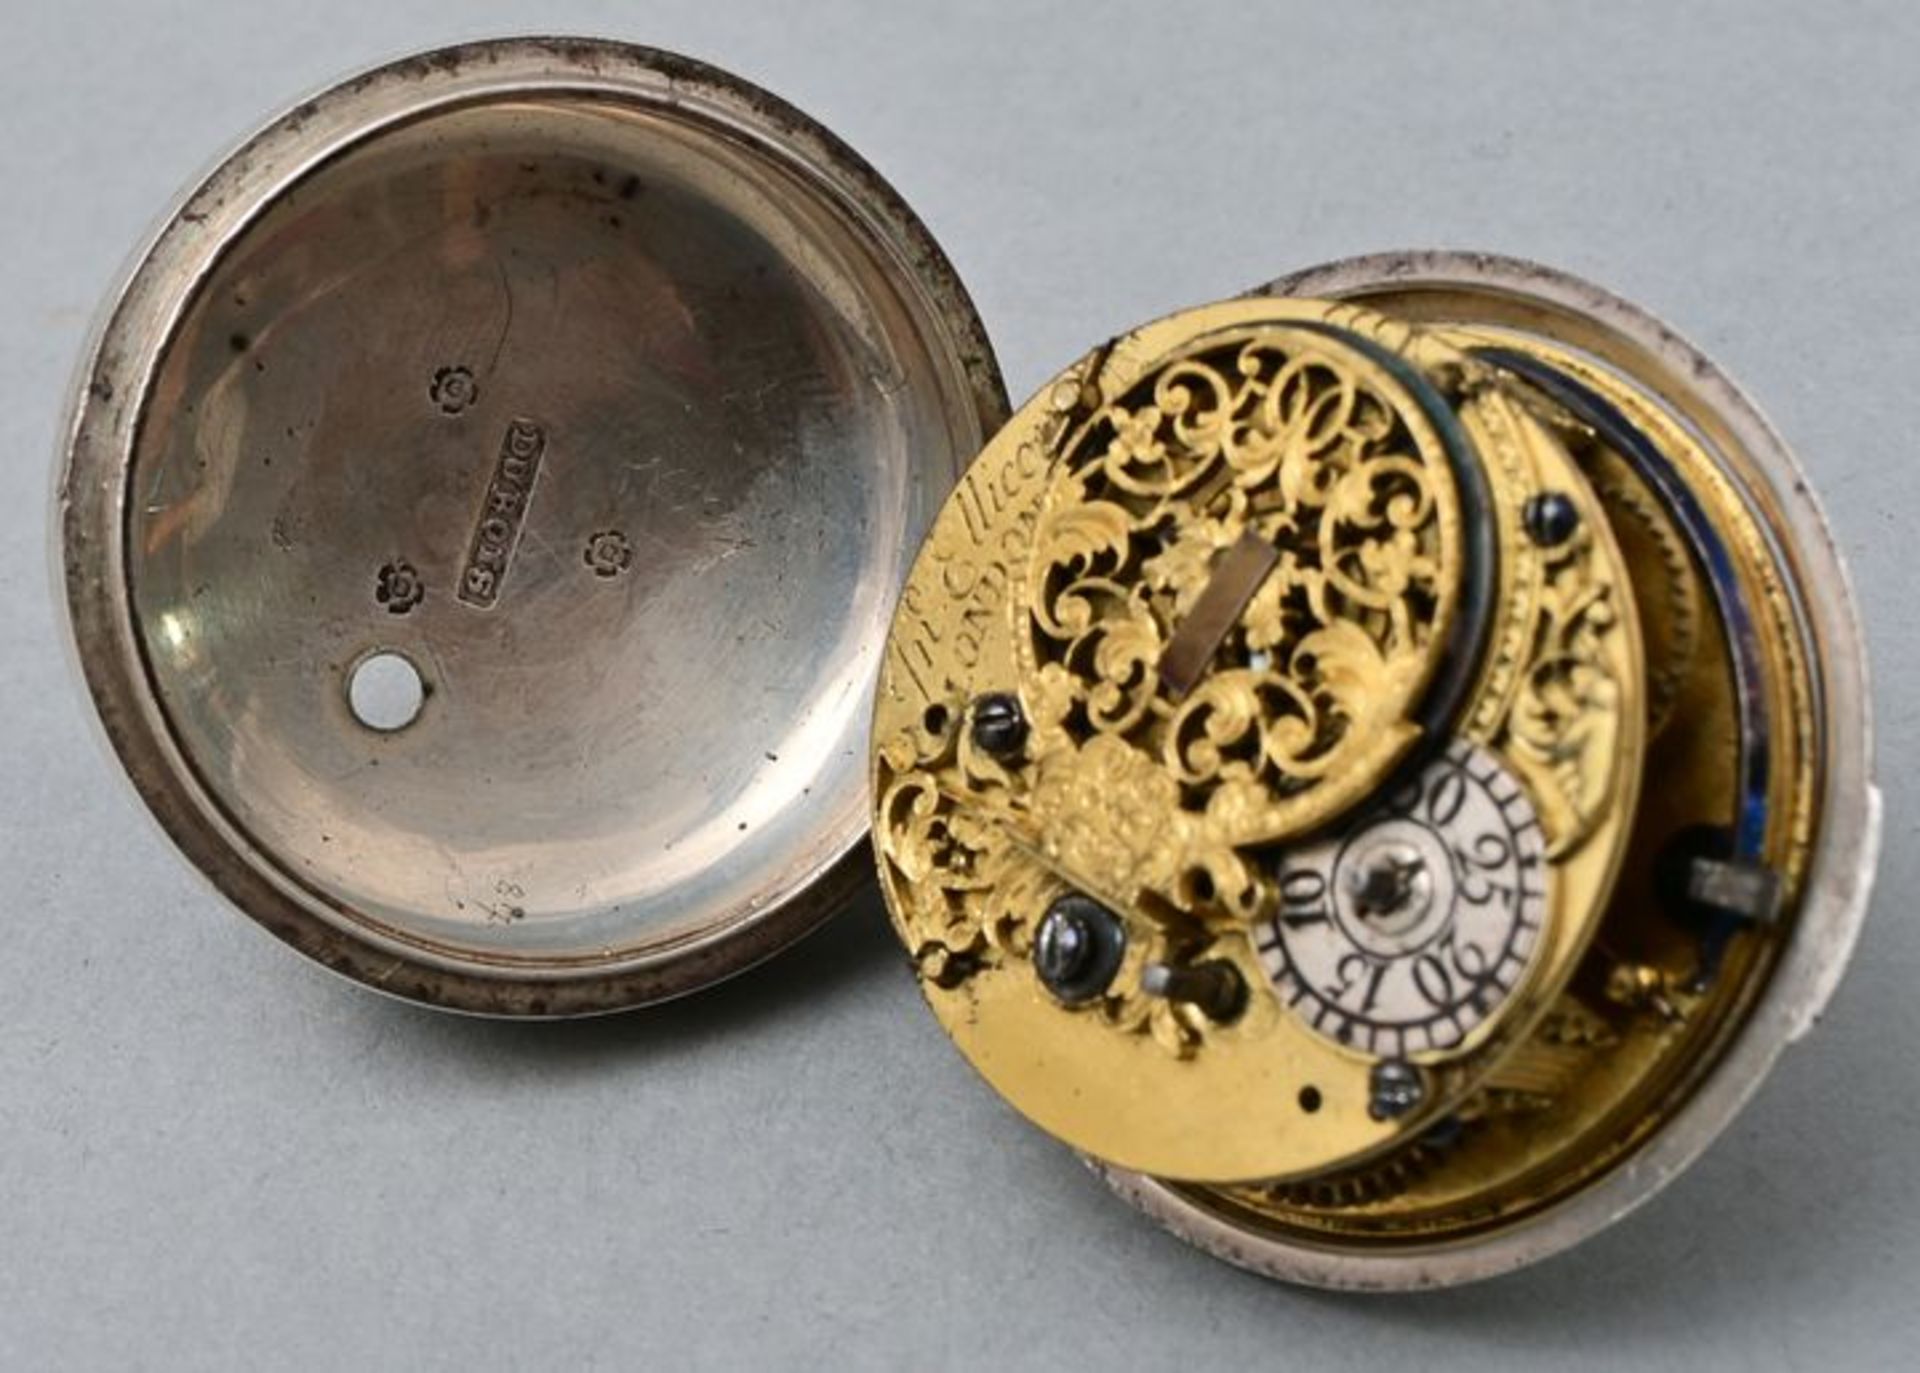 Herrentaschenuhr mit Übergehäuse / Men´s pocket watch with case - Image 5 of 5